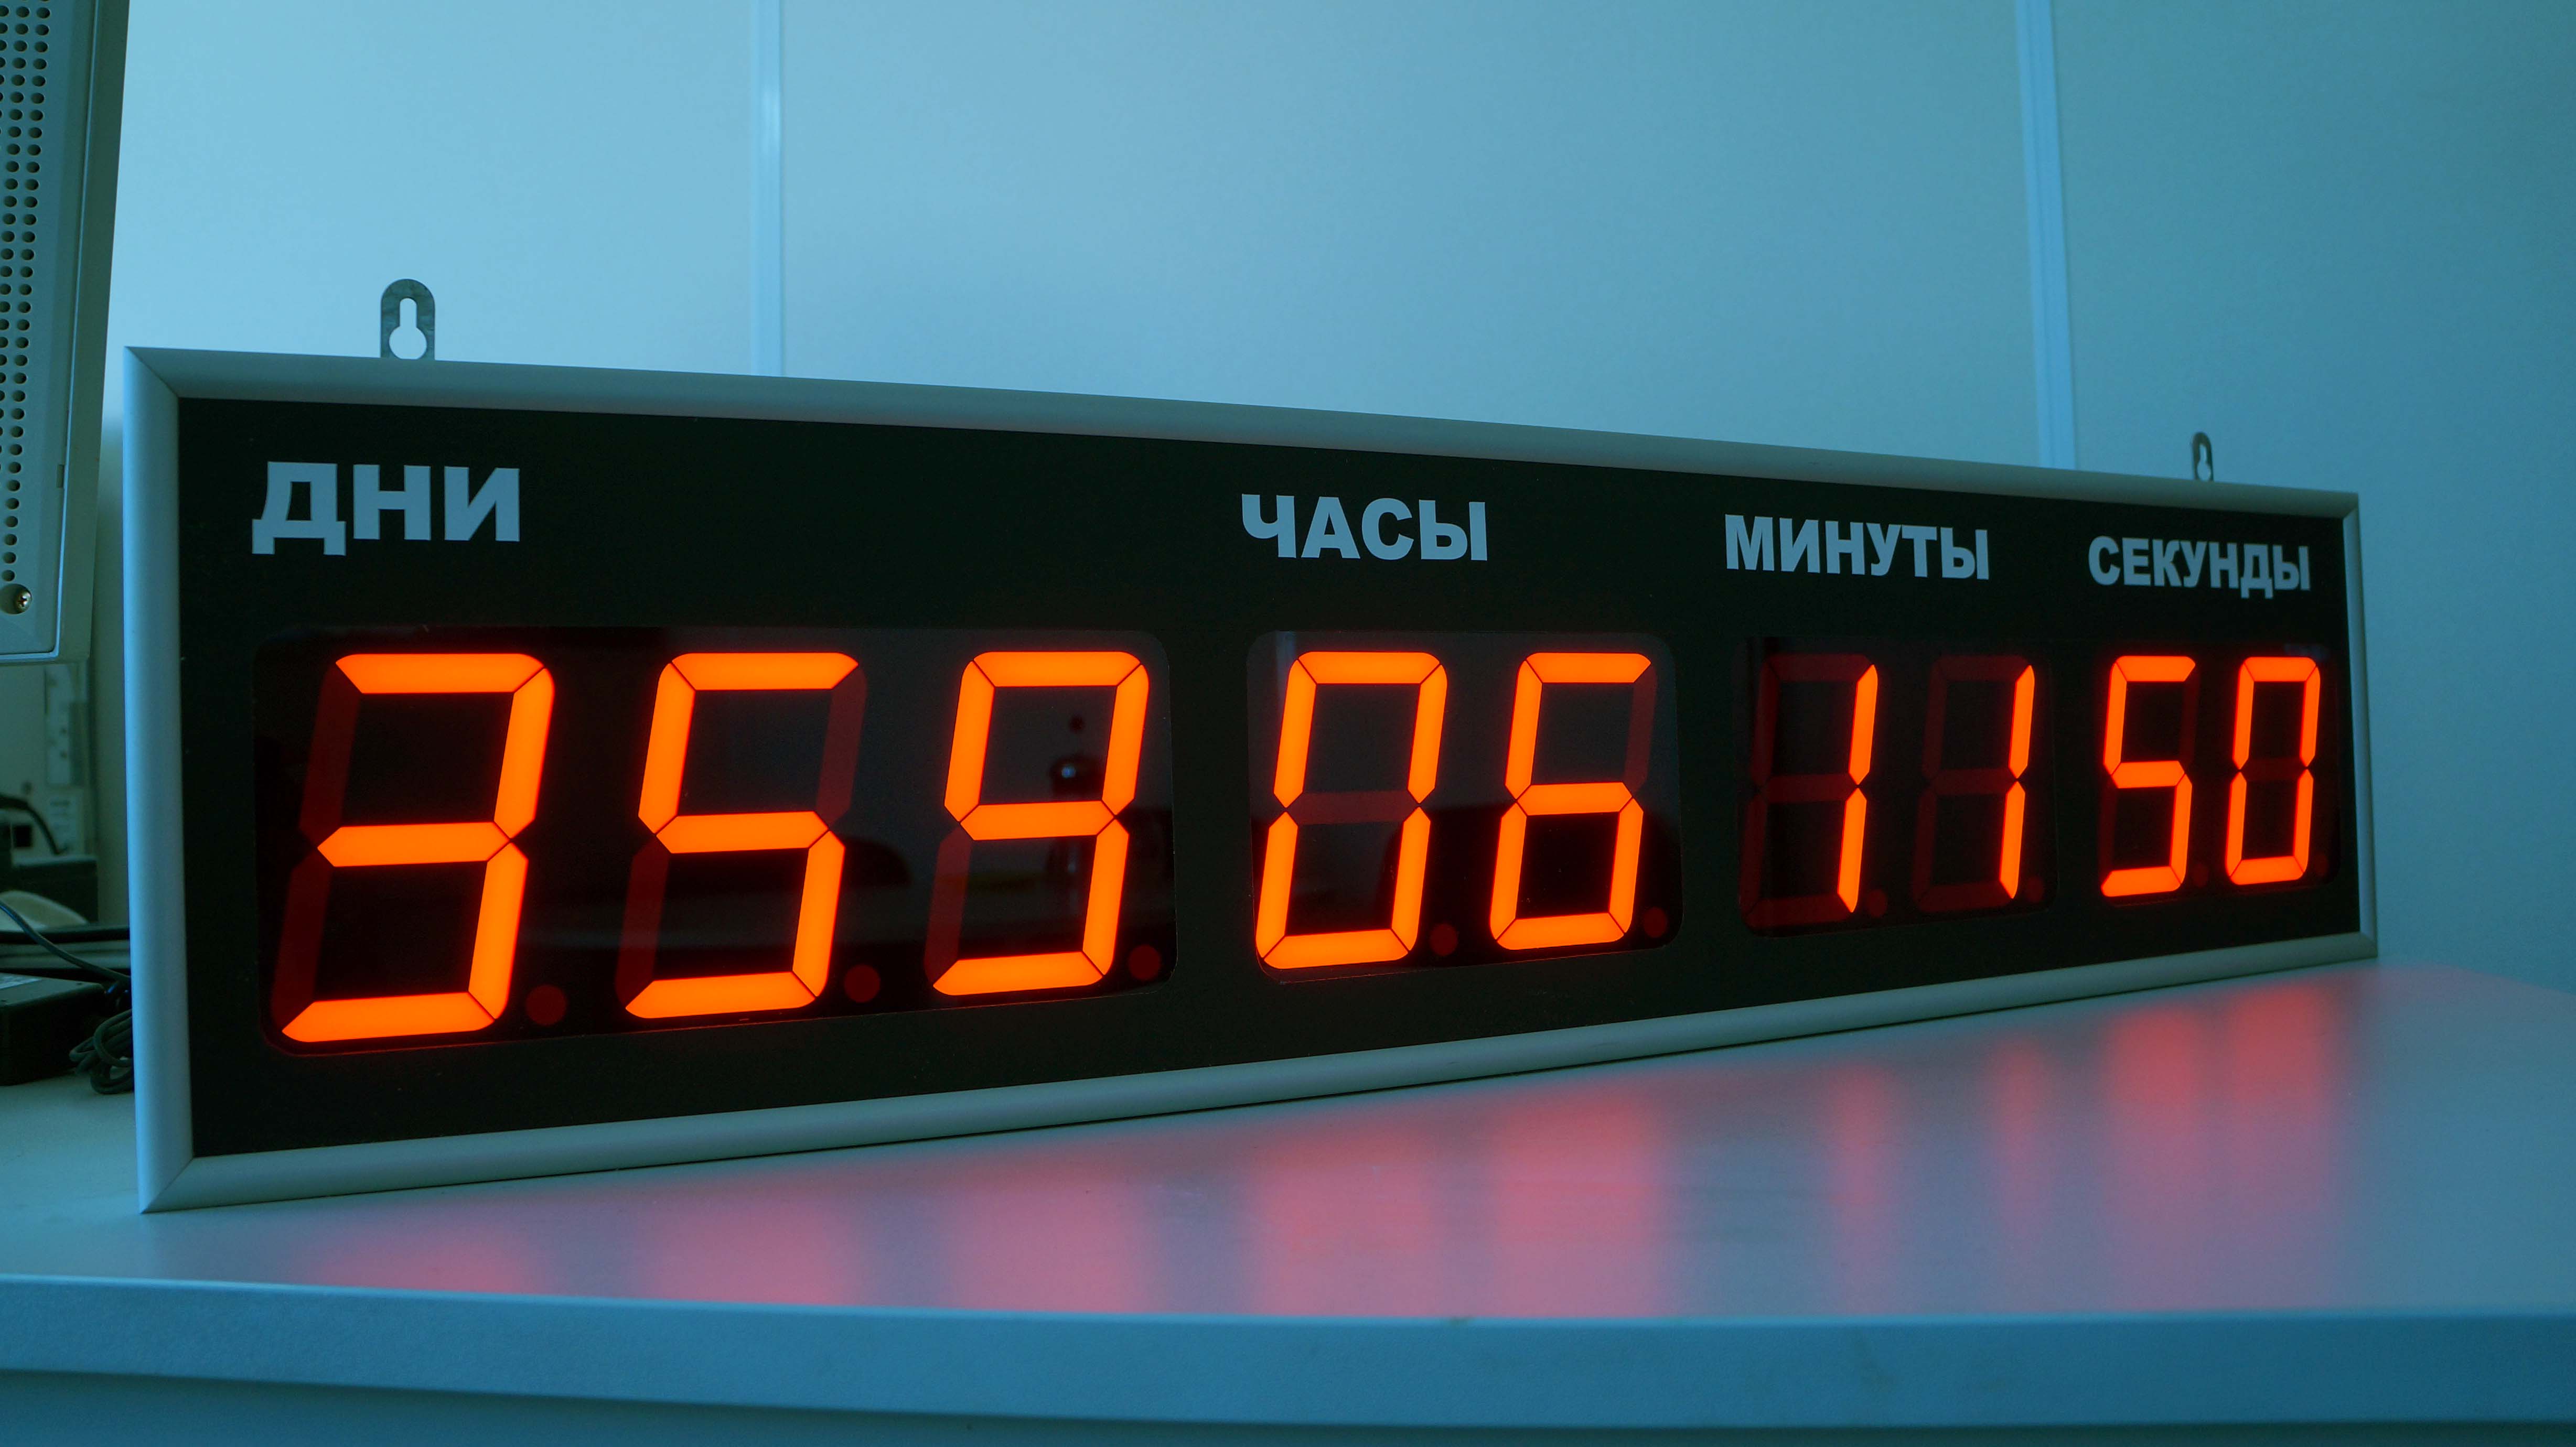 Циферблат табло. 70-0530 Rexant цифровые часы с таймером обратного отсчета RX-100а. Электронные часы интеграл Чэ-01 с ЖК дисплеем. Табло с таймером обратного отсчета. Часы настенные электронные.